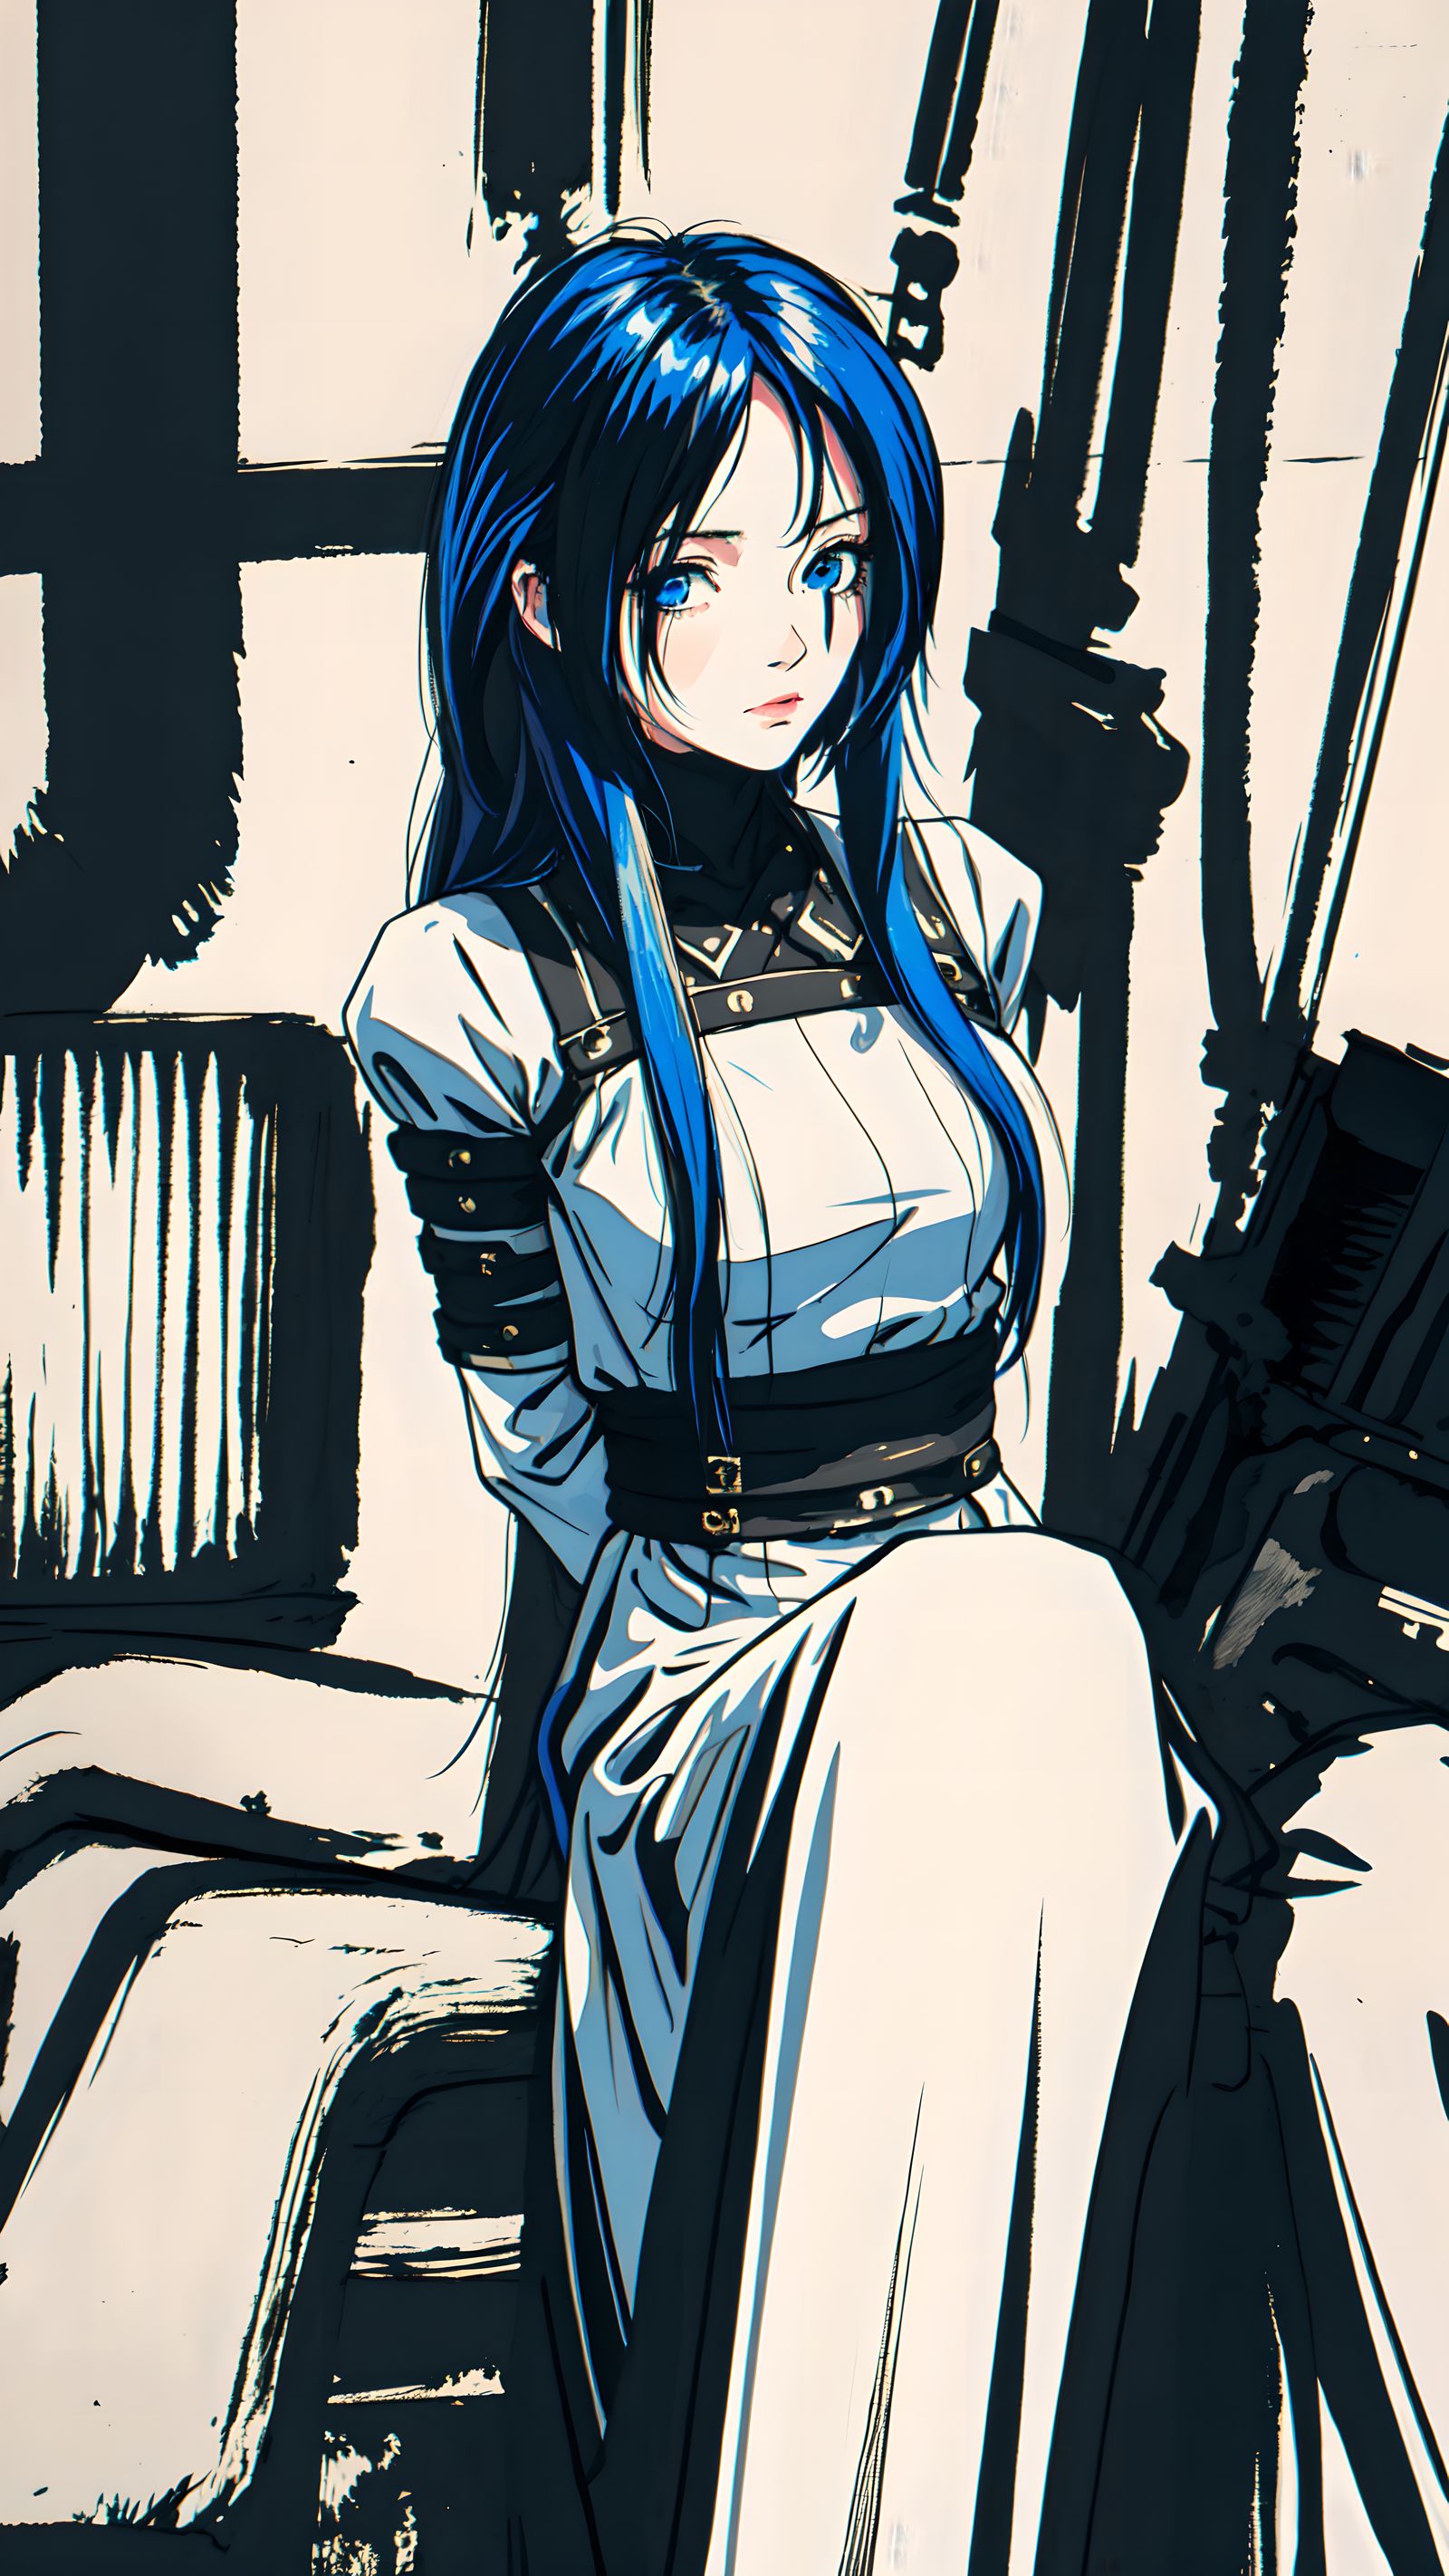 蓝发少女独坐长发裙装，对视蓝眸生动。插画图片壁纸